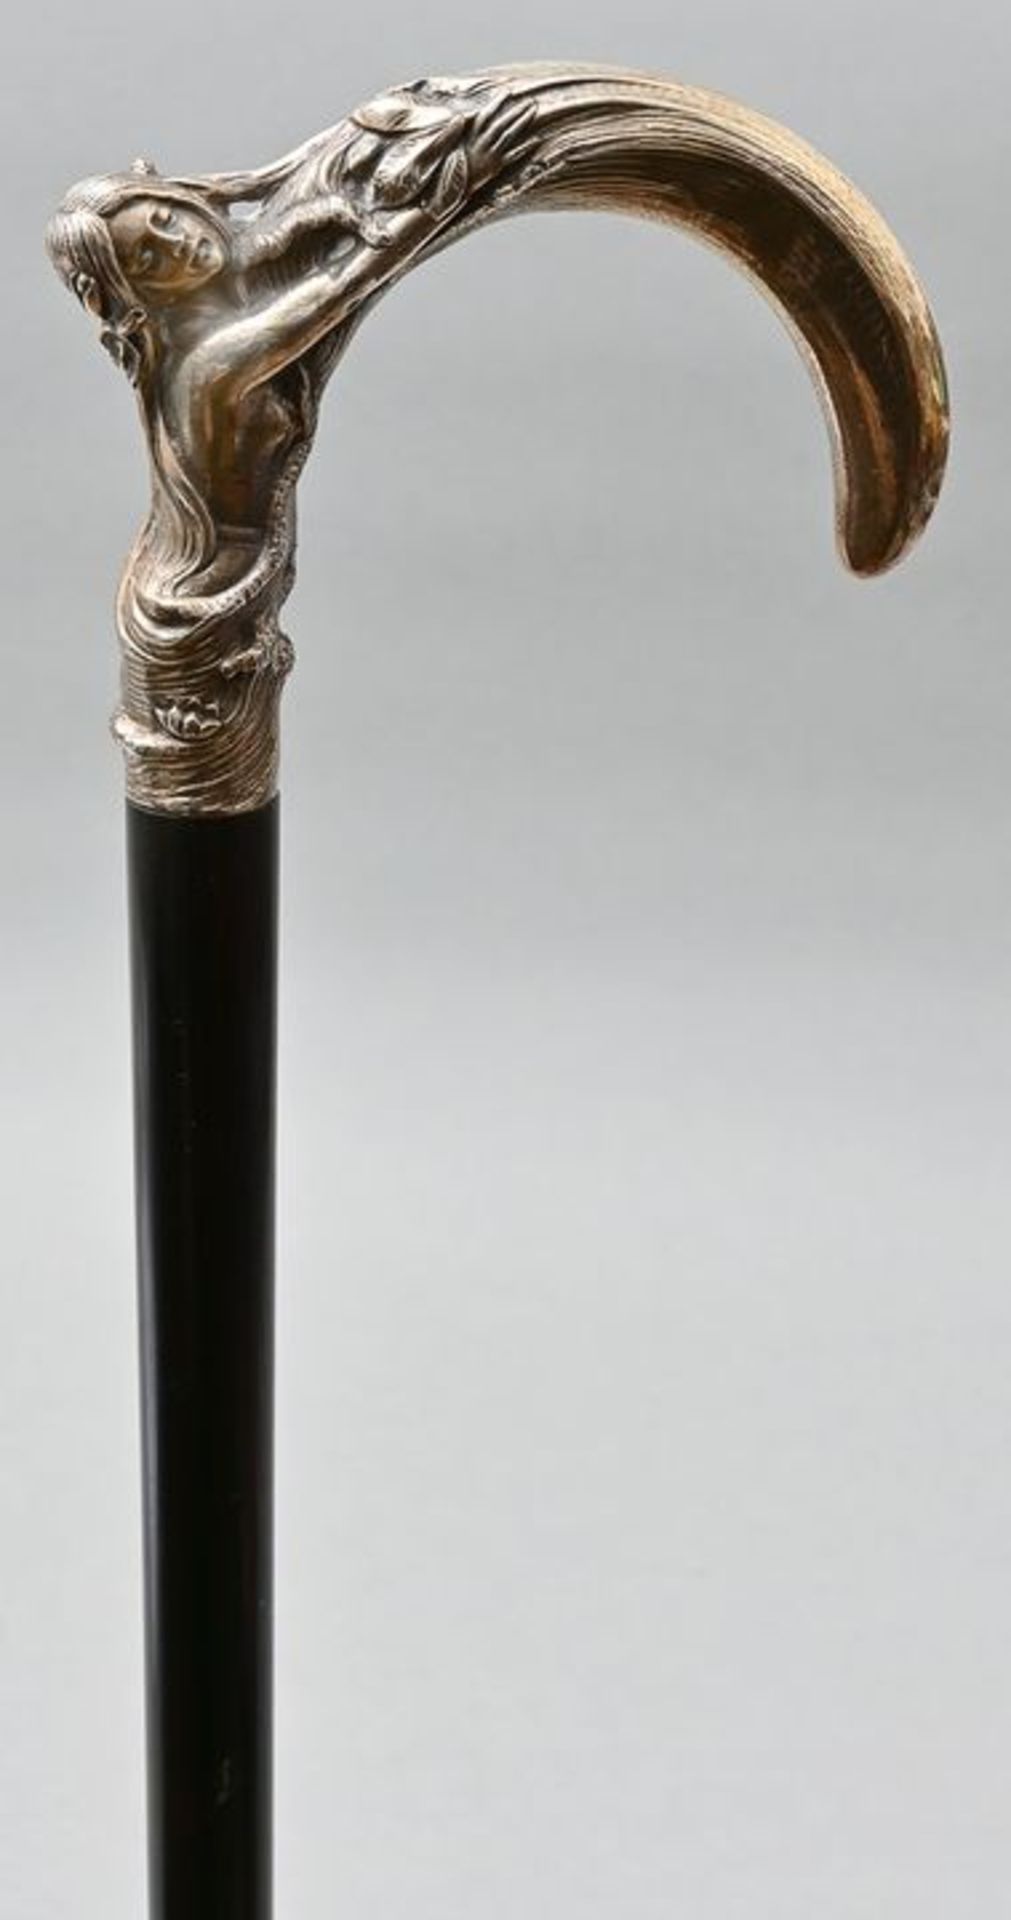 Jugendstilspazierstock / Art nouveau cane - Image 4 of 5